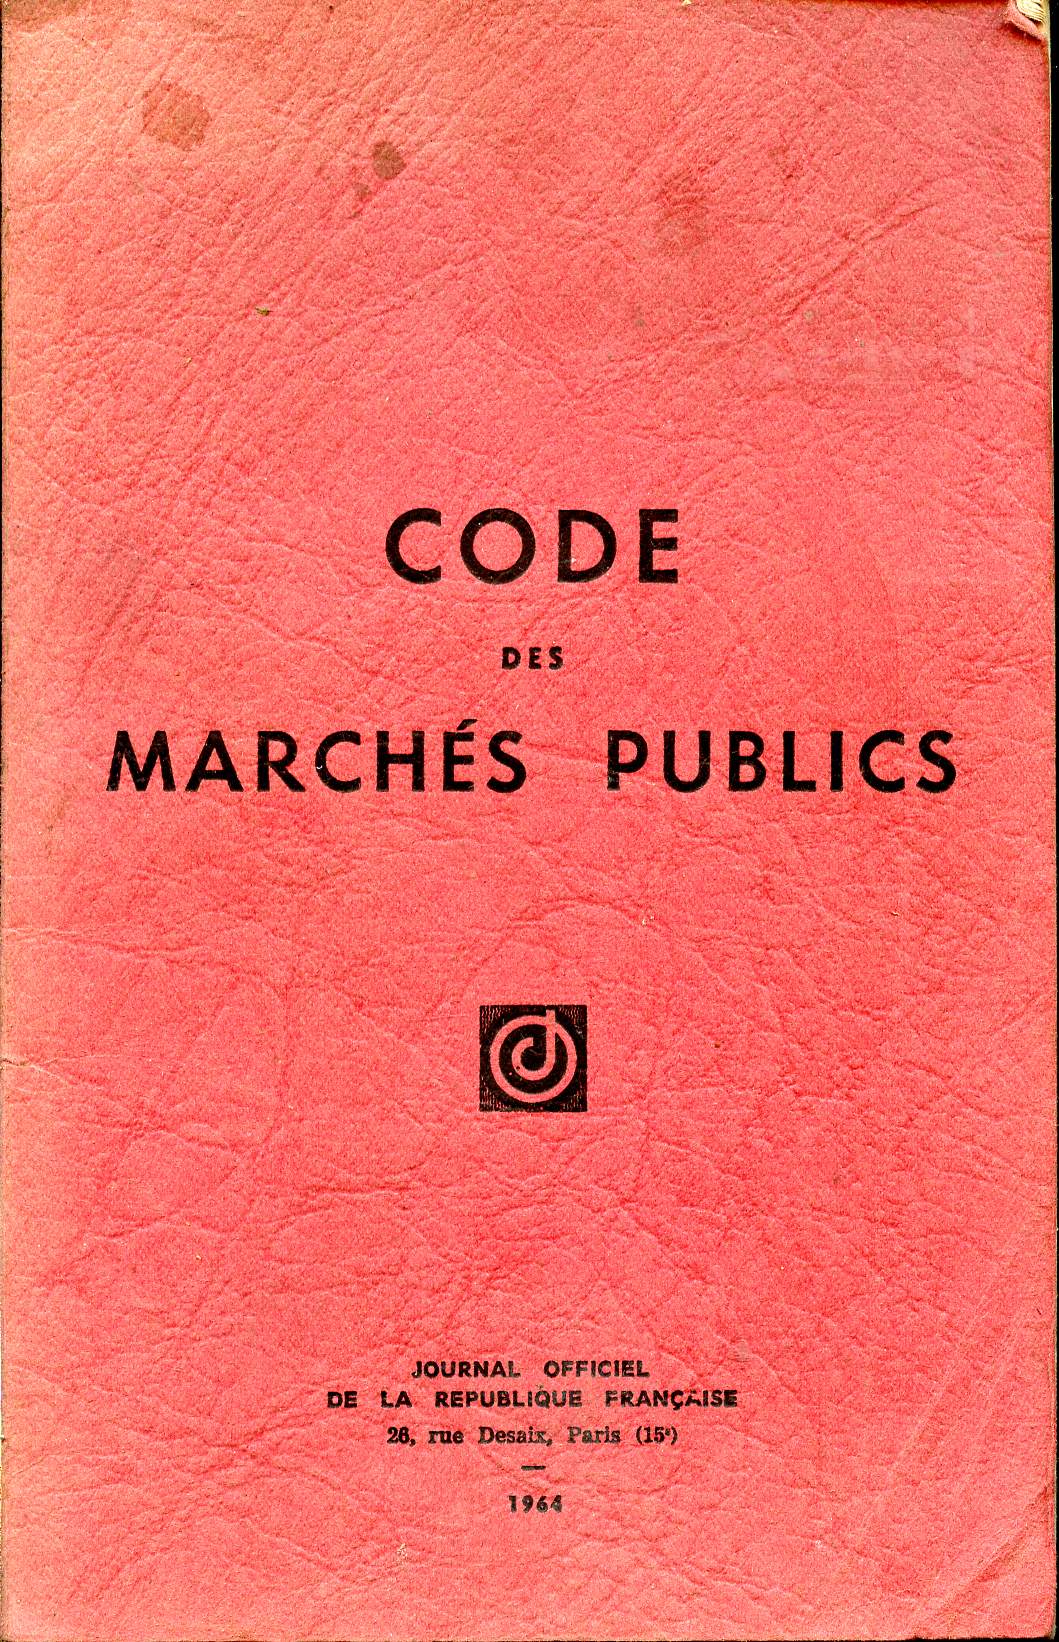 Code des Marchs publics